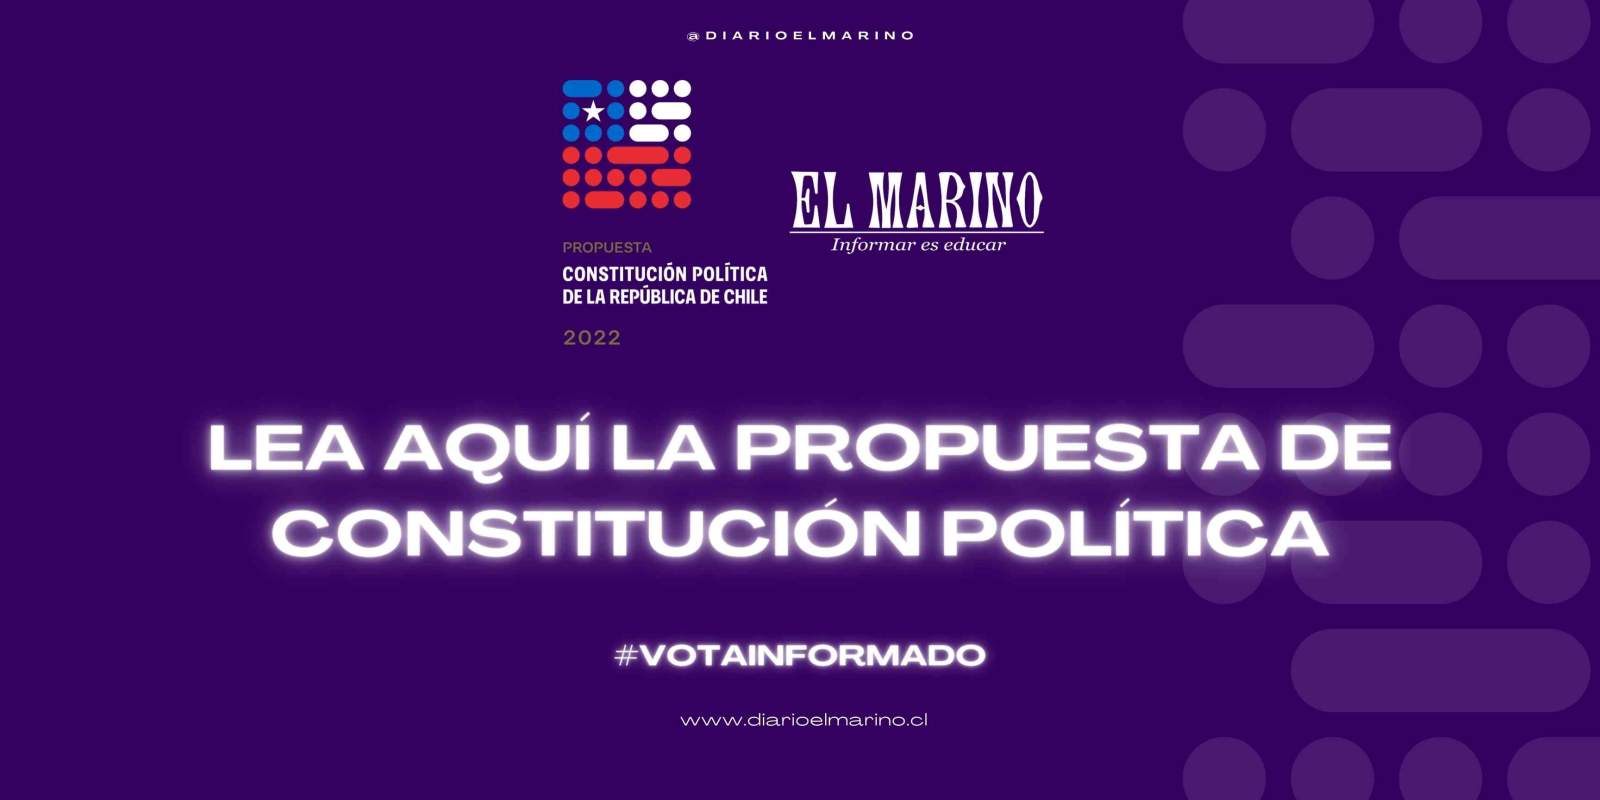  Propuesta Constitucional - APORTE GRATUITO DE EL MARINO